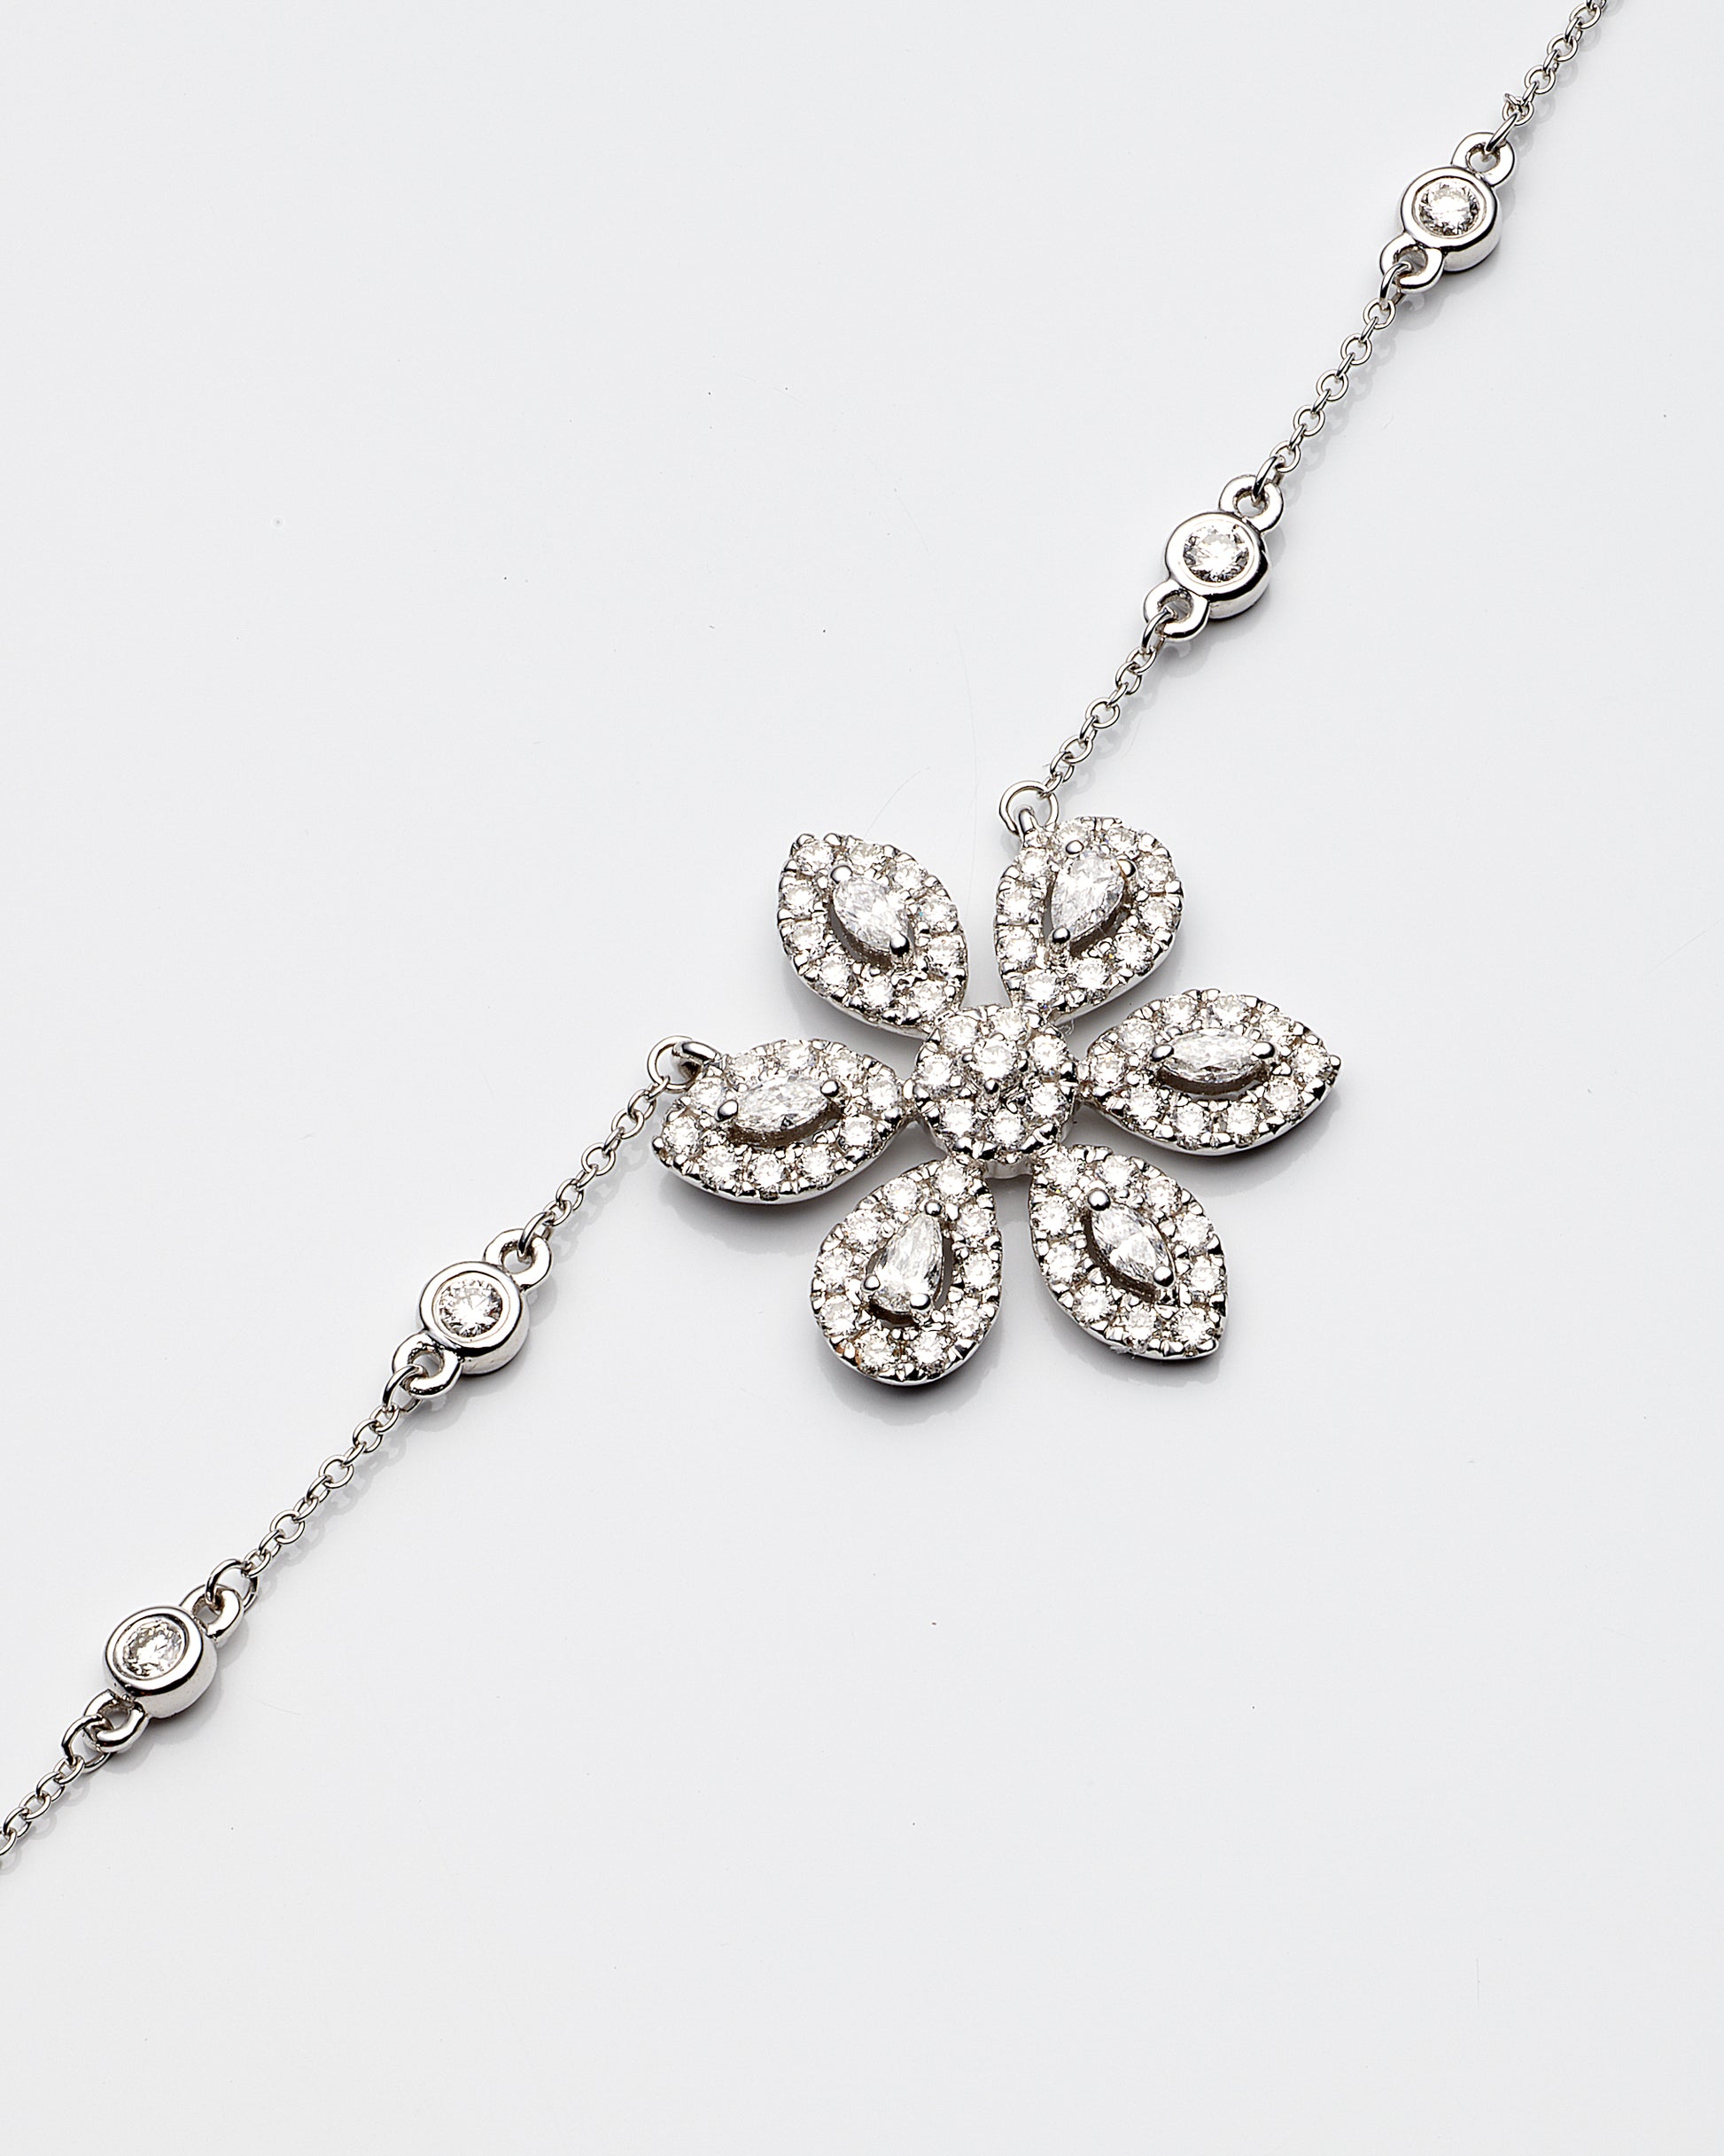 18K White Gold Diamond Flower Necklace 18In 2.4Dwt